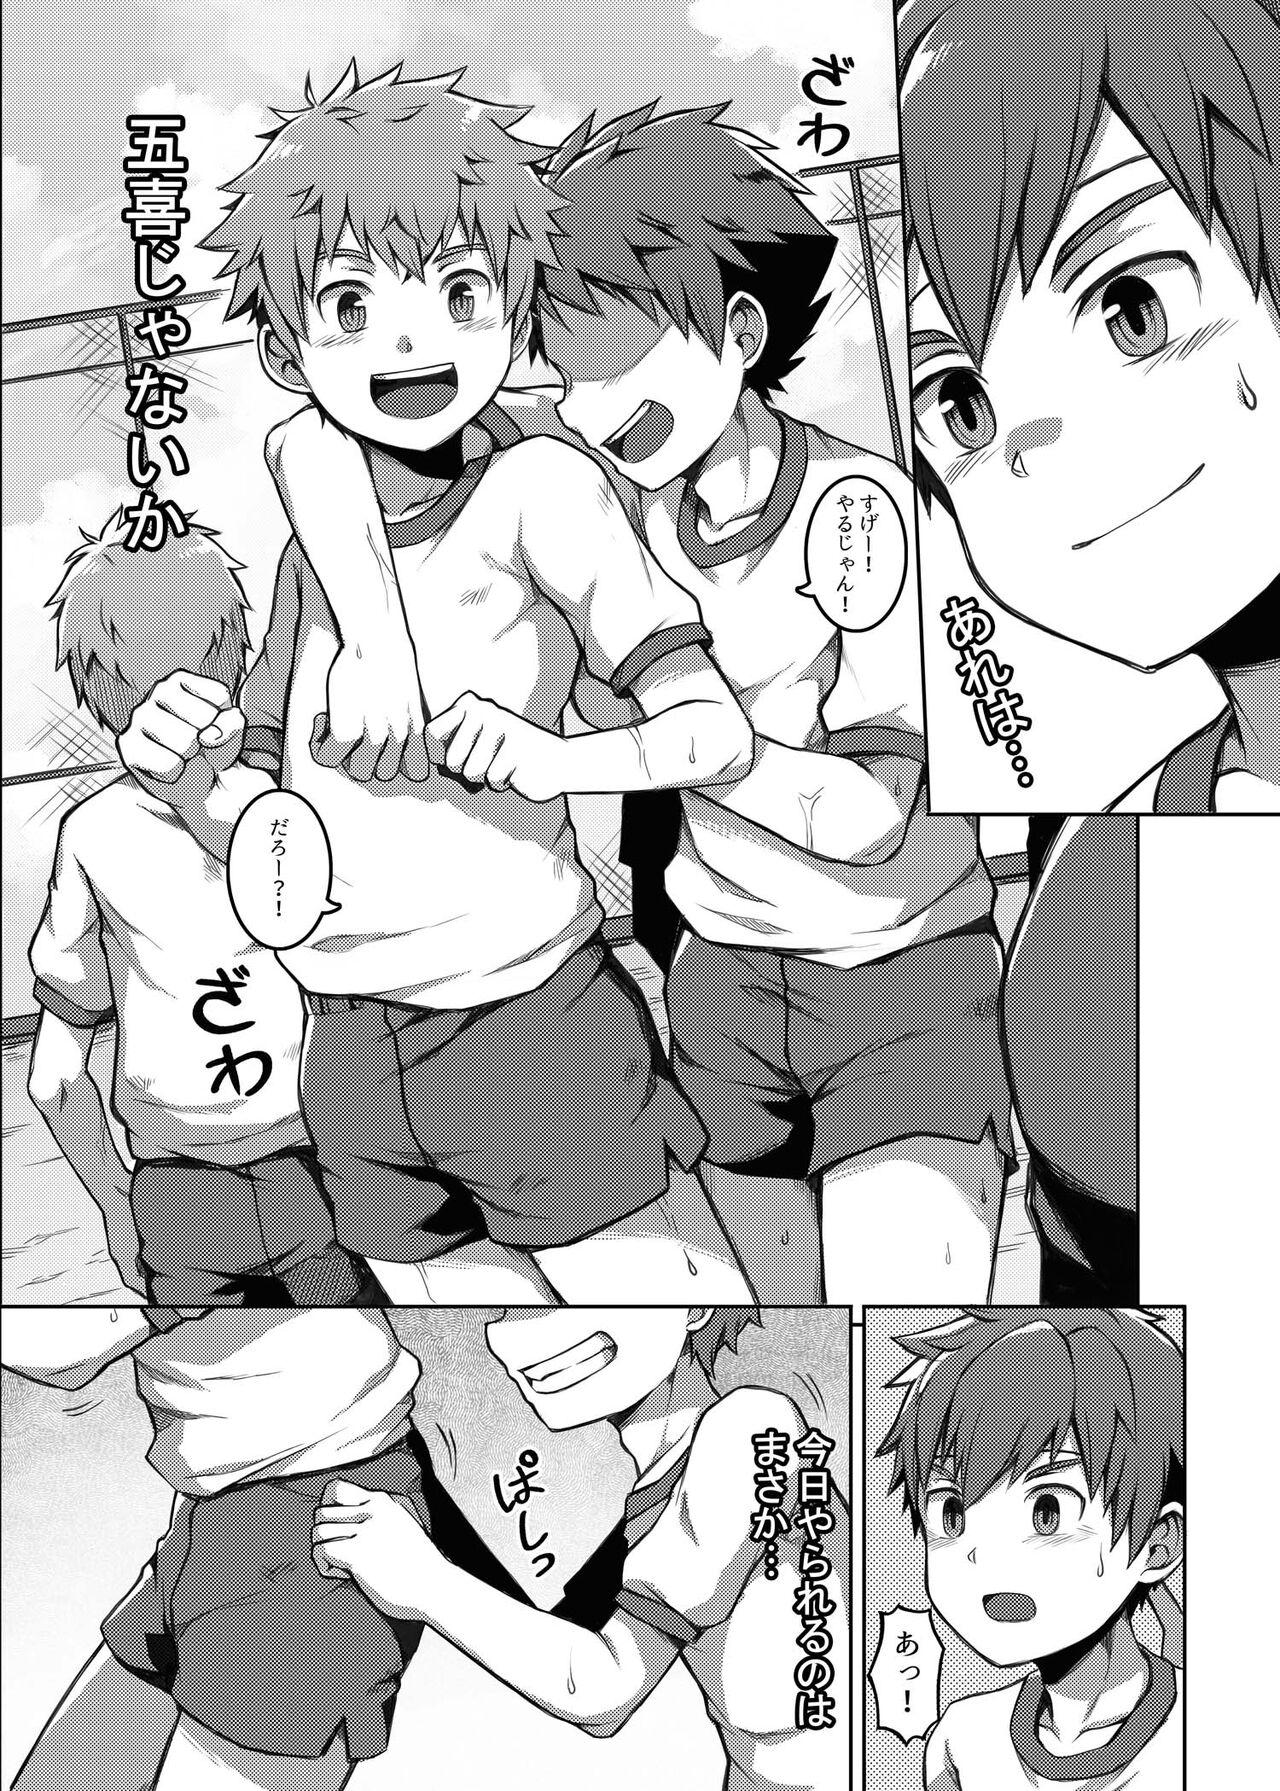 Threesome Taiiku Jugyou wa Saikou daze! - Physical Education is Awesome! - Original Argenta - Page 4